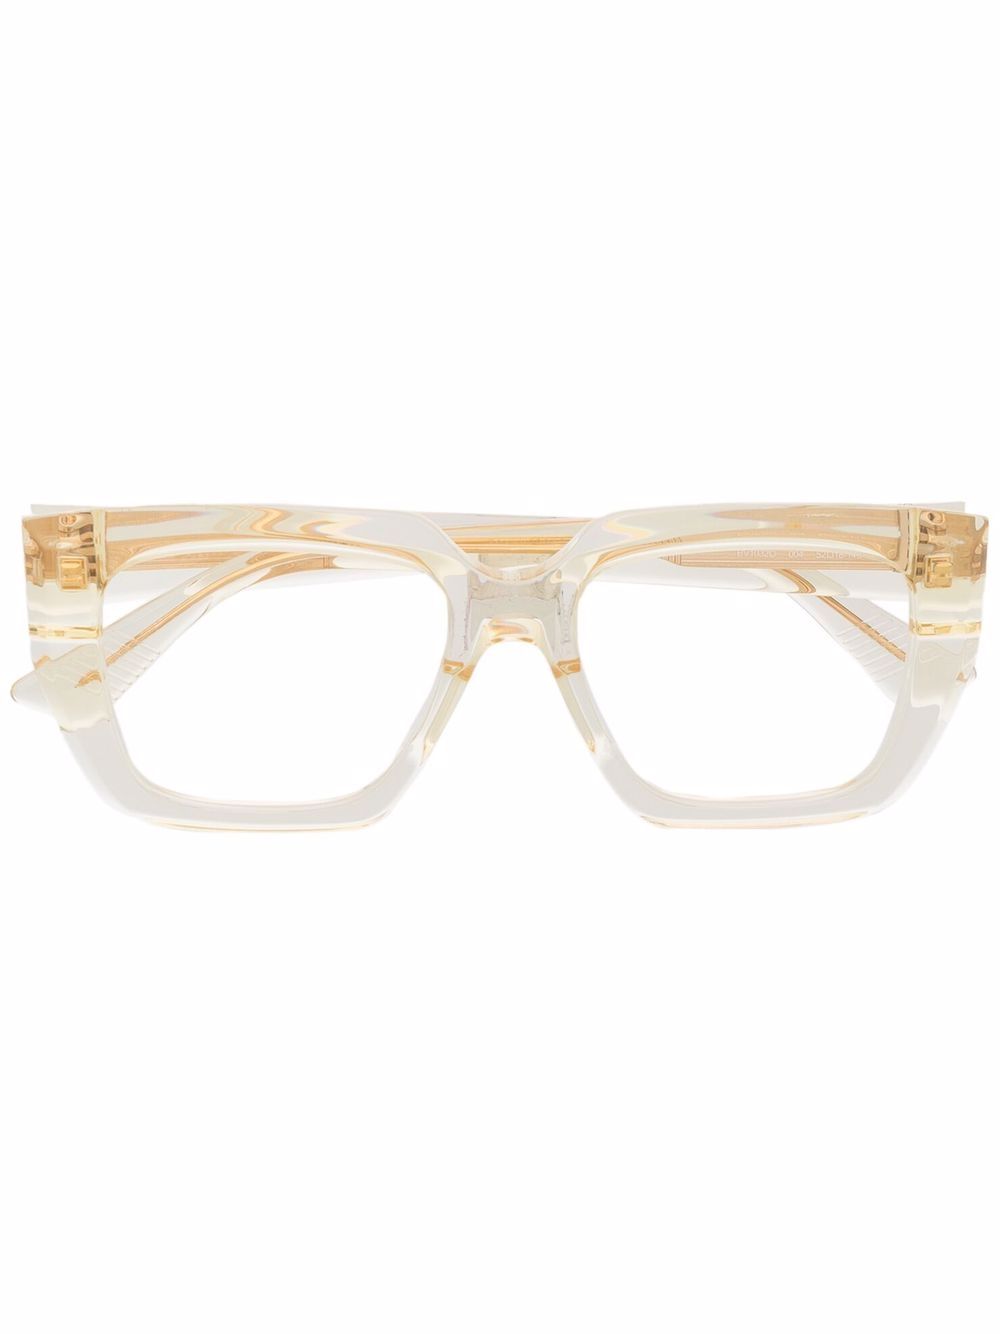 фото Bottega veneta eyewear очки в прозрачной прямоугольной оправе